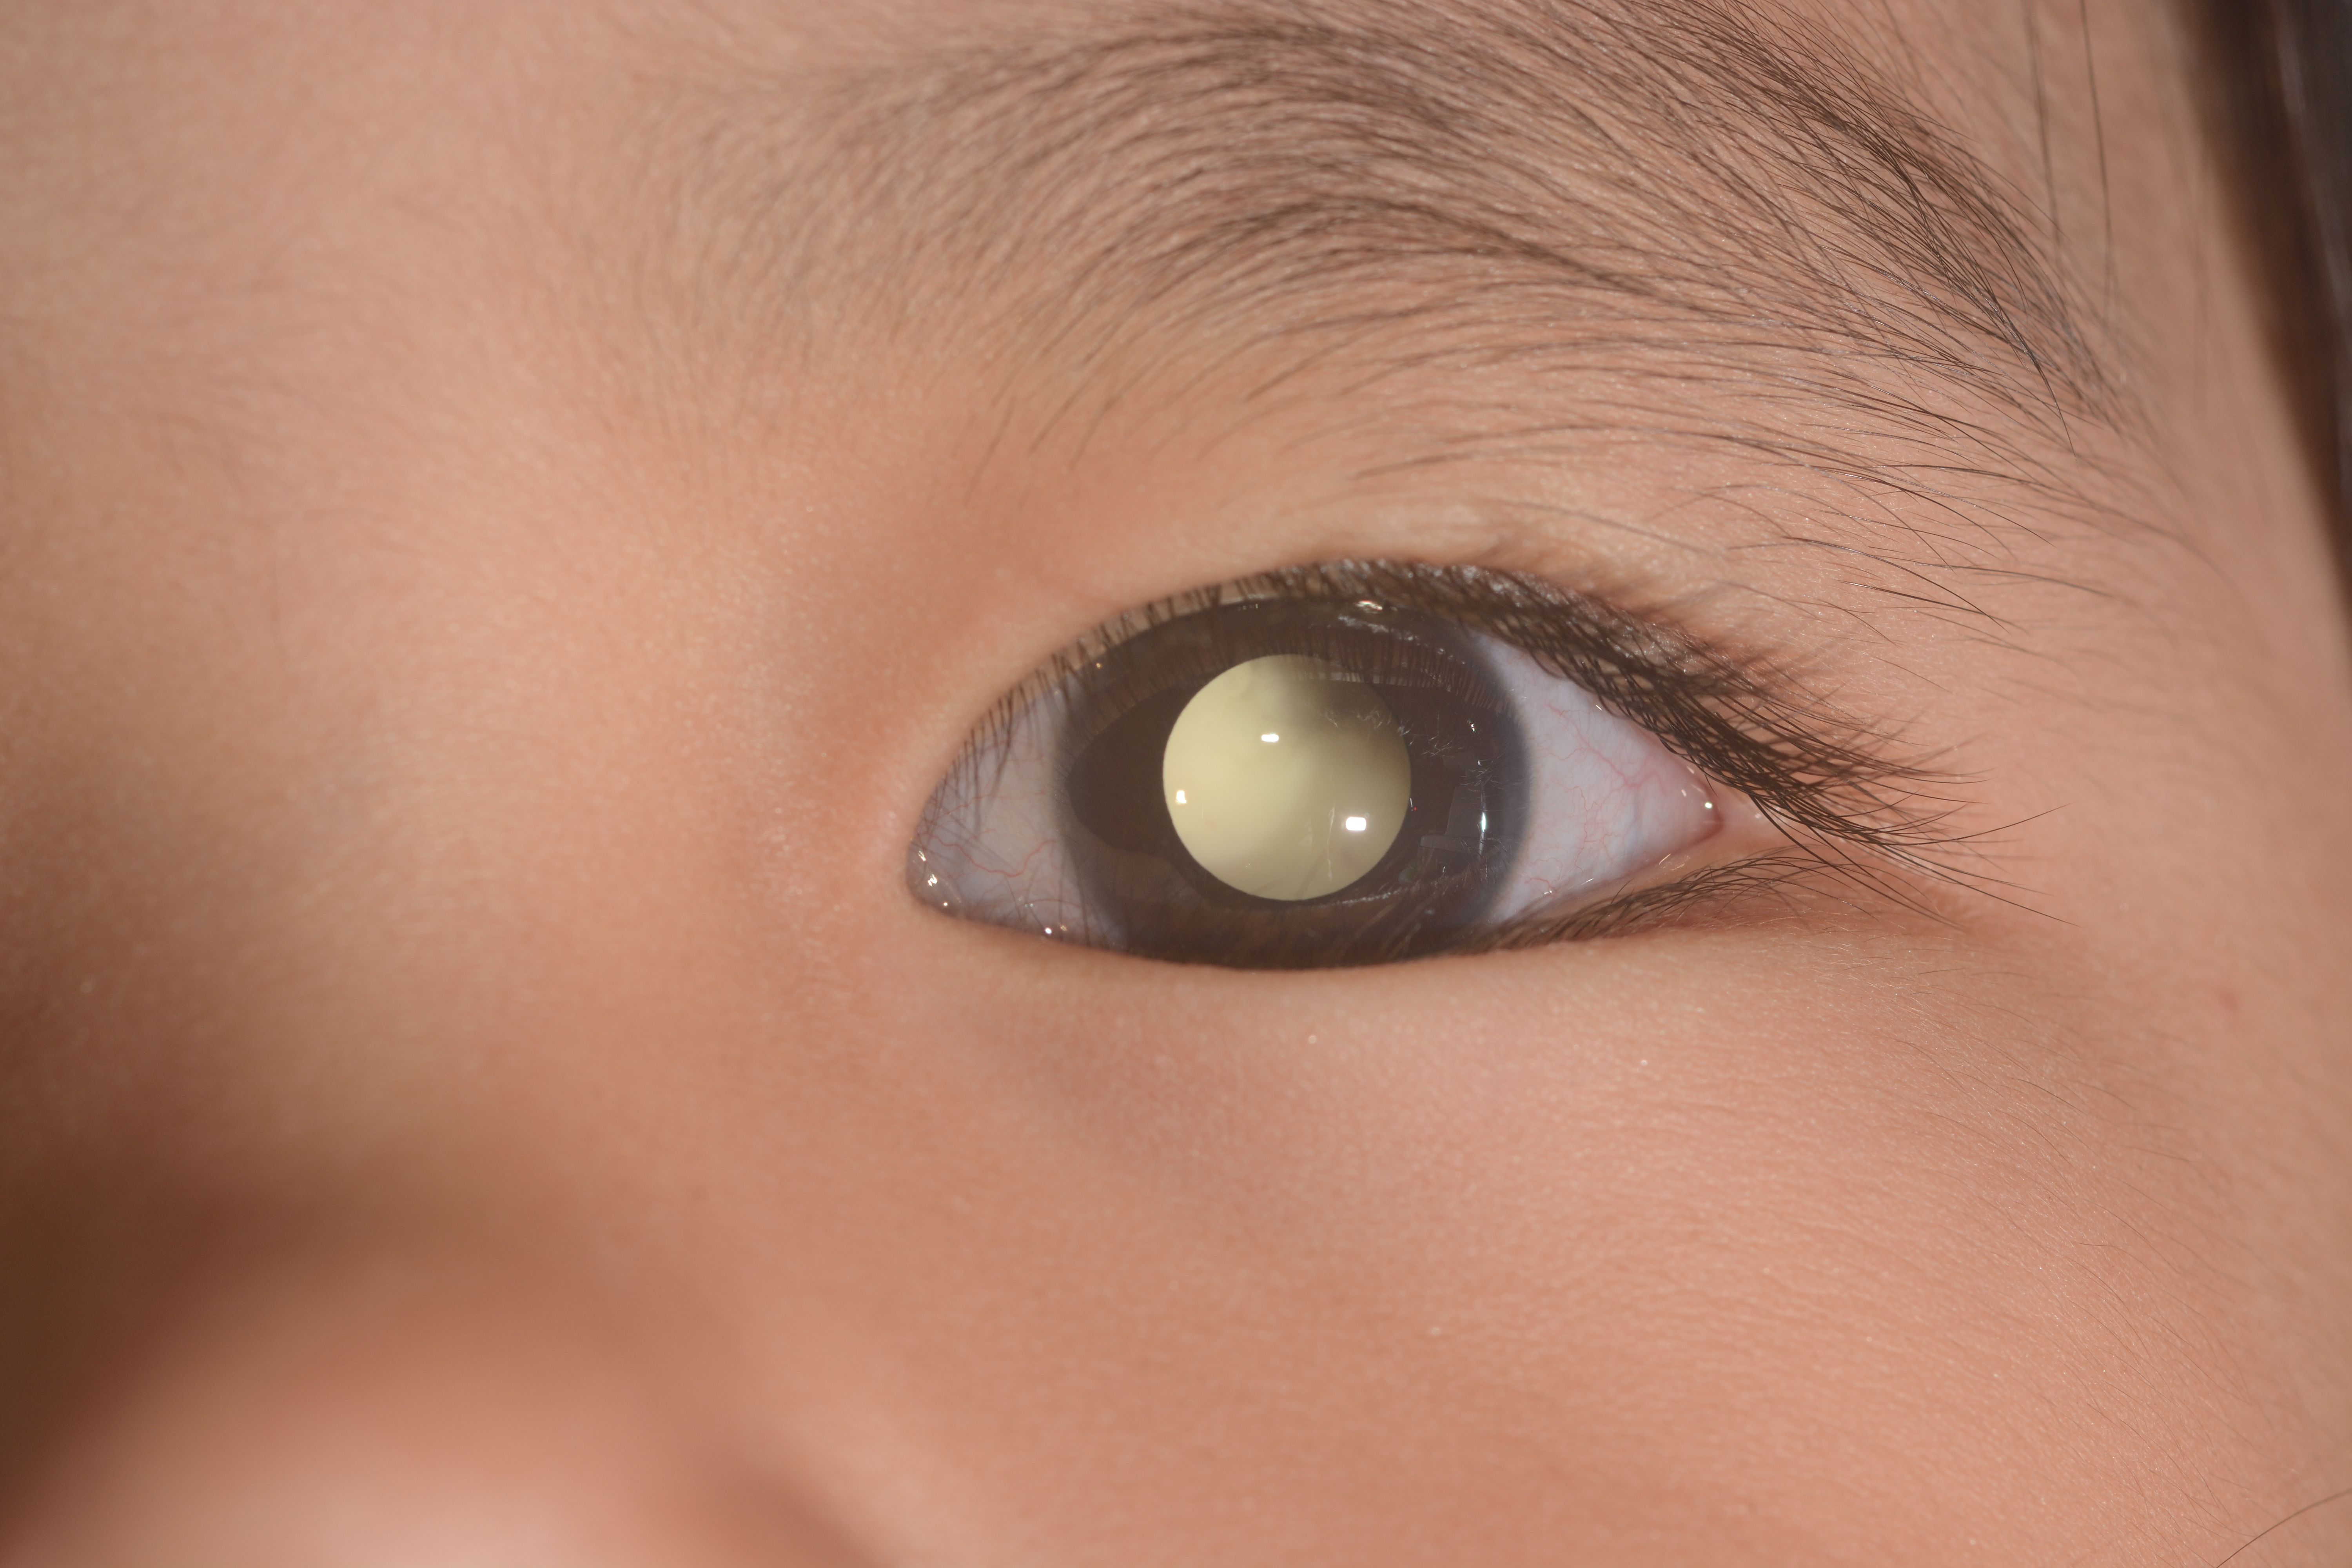 Leukocoria - white eye